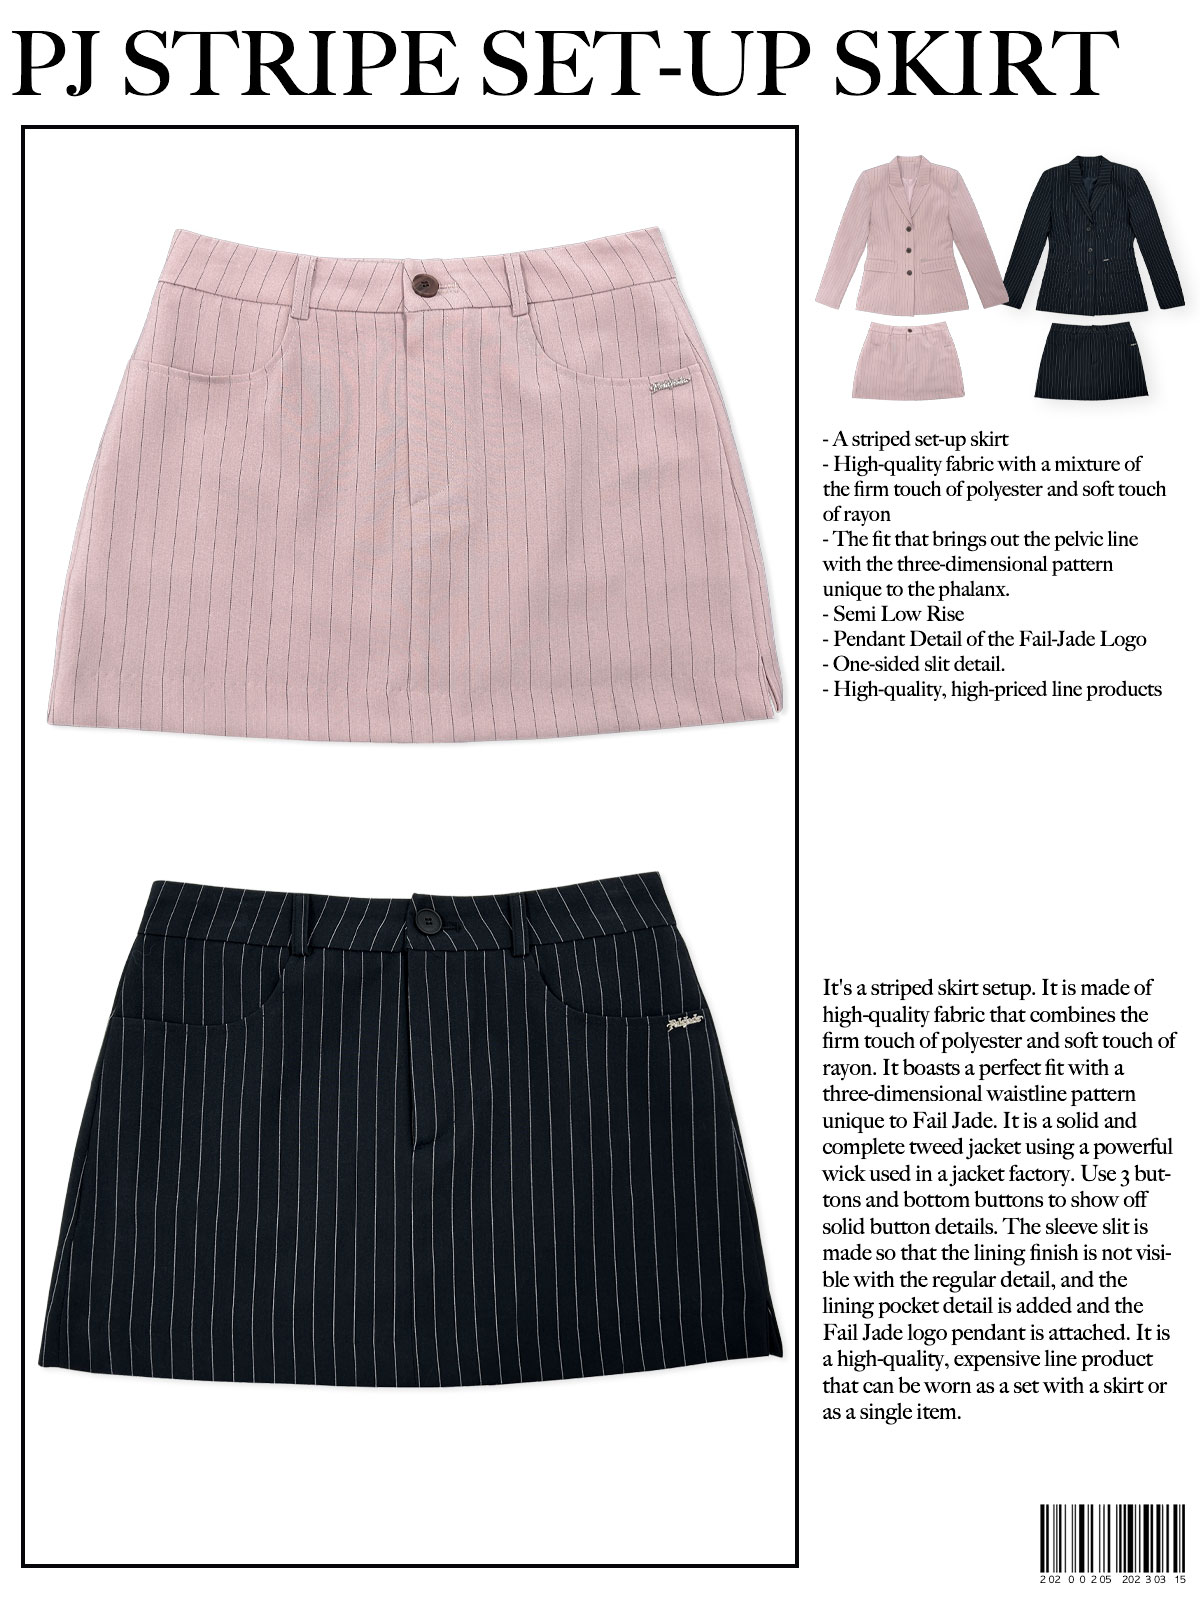 PJ Stripe Skirt 2pc - Skirt